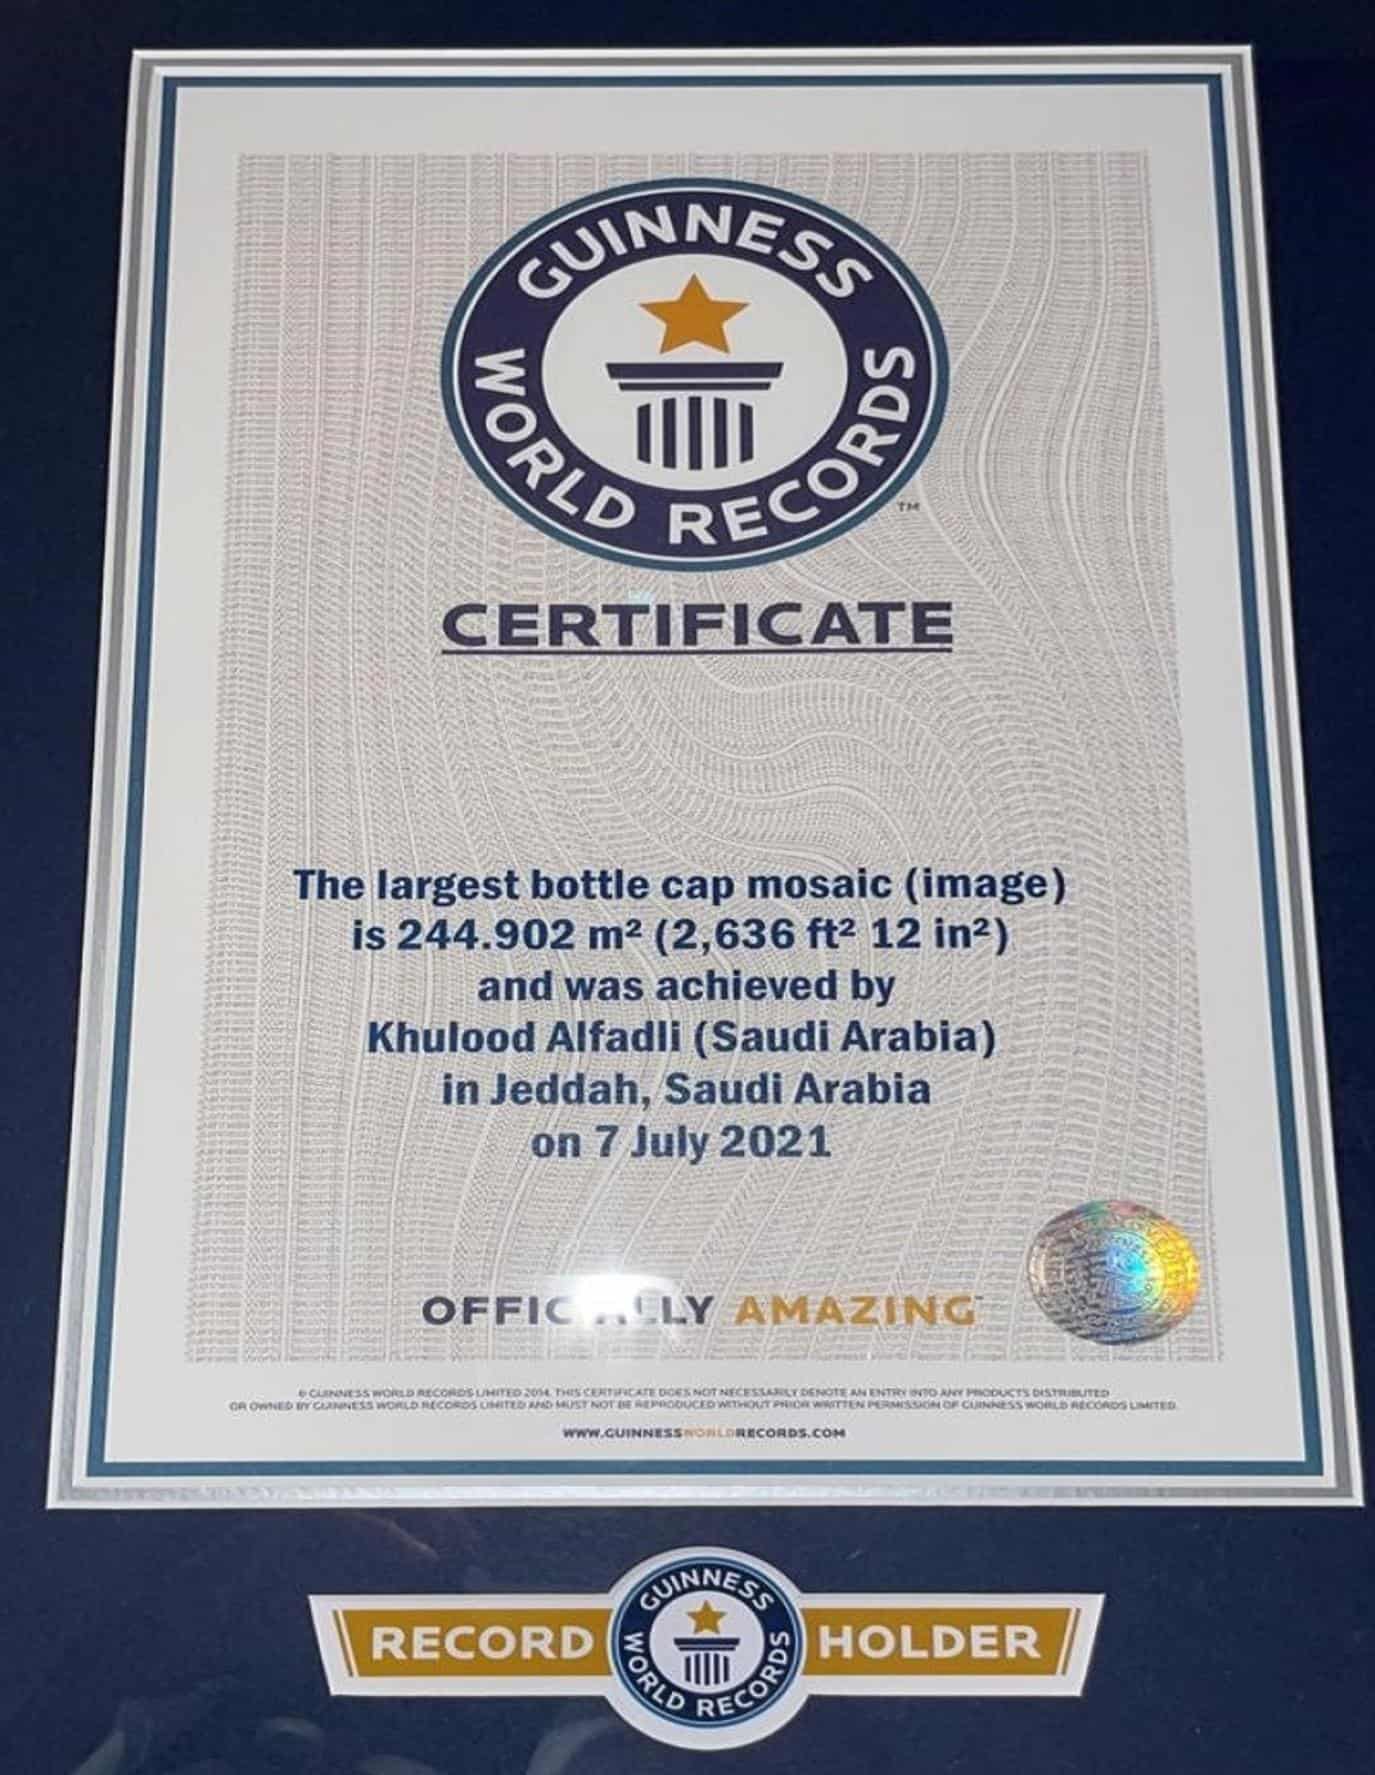 السعودية خلود الفضلي تدخل موسوعة جينيس بأكبر لوحة موزاييك في العالم